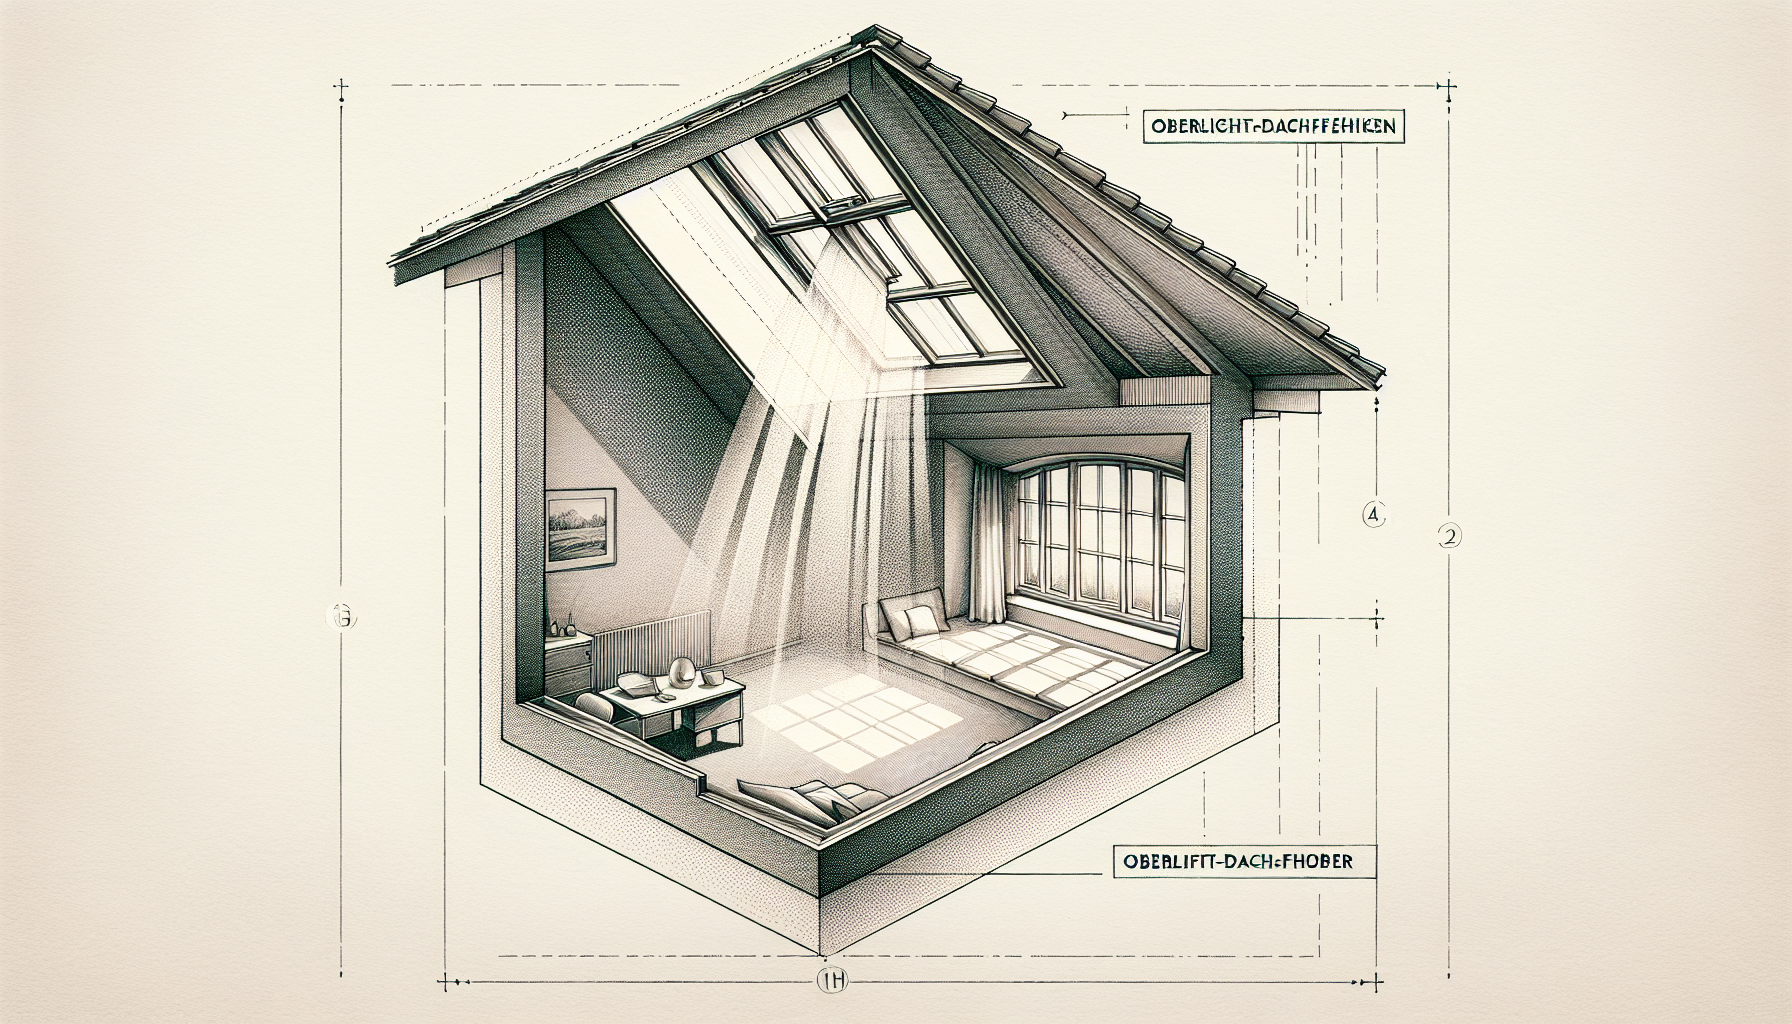 Schematische Darstellung eines Oberlicht-Dachfensters